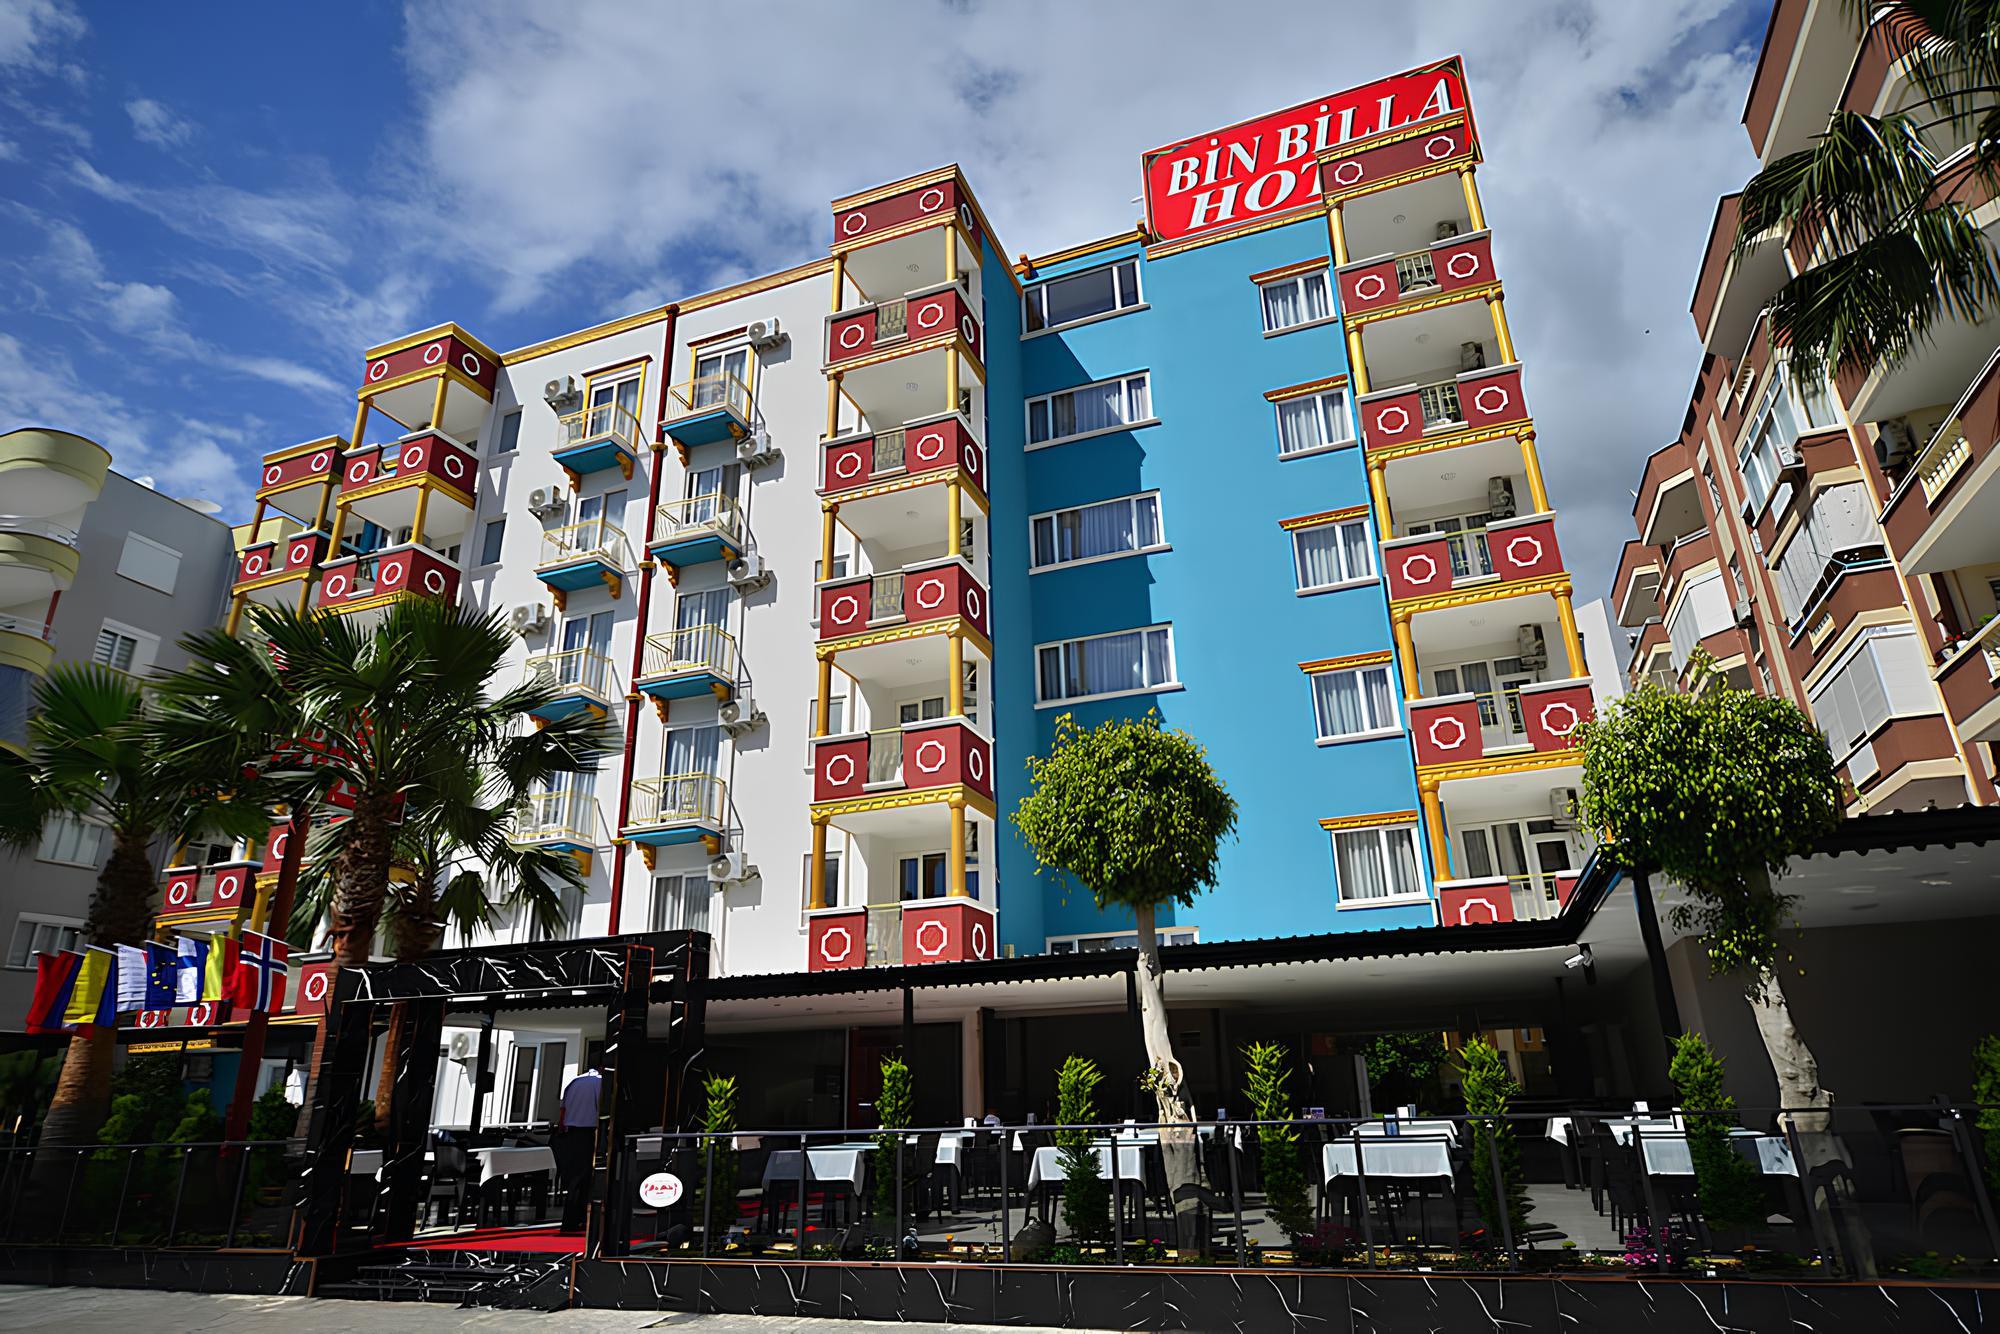 Bin Billa Hotel 3*